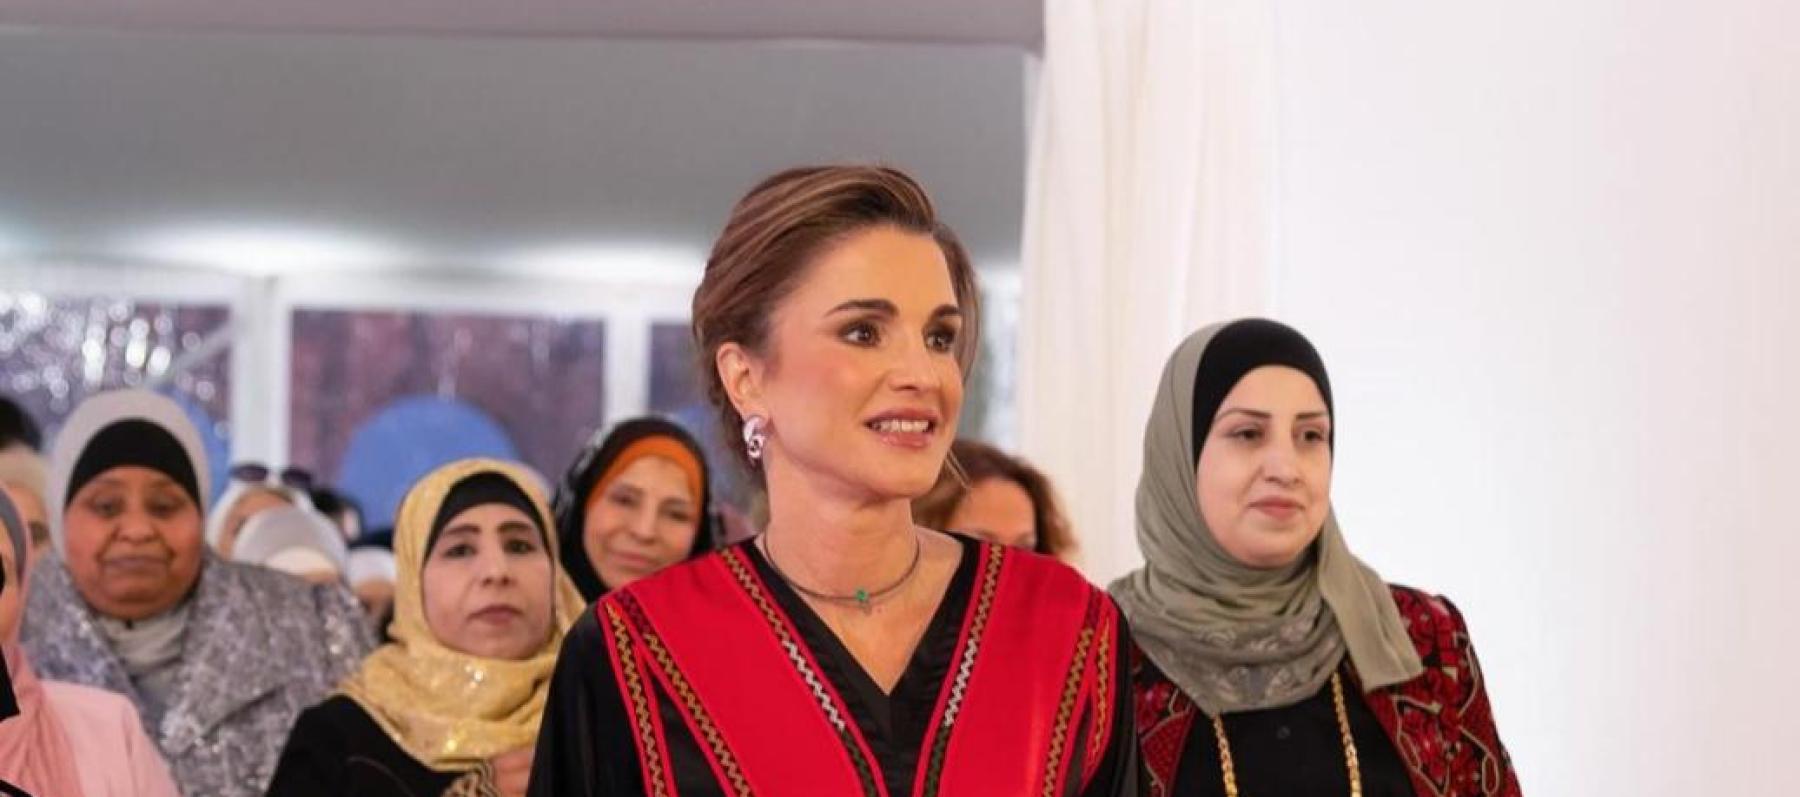 الملكة رانيا تستقبل بالزغاريد في جرش